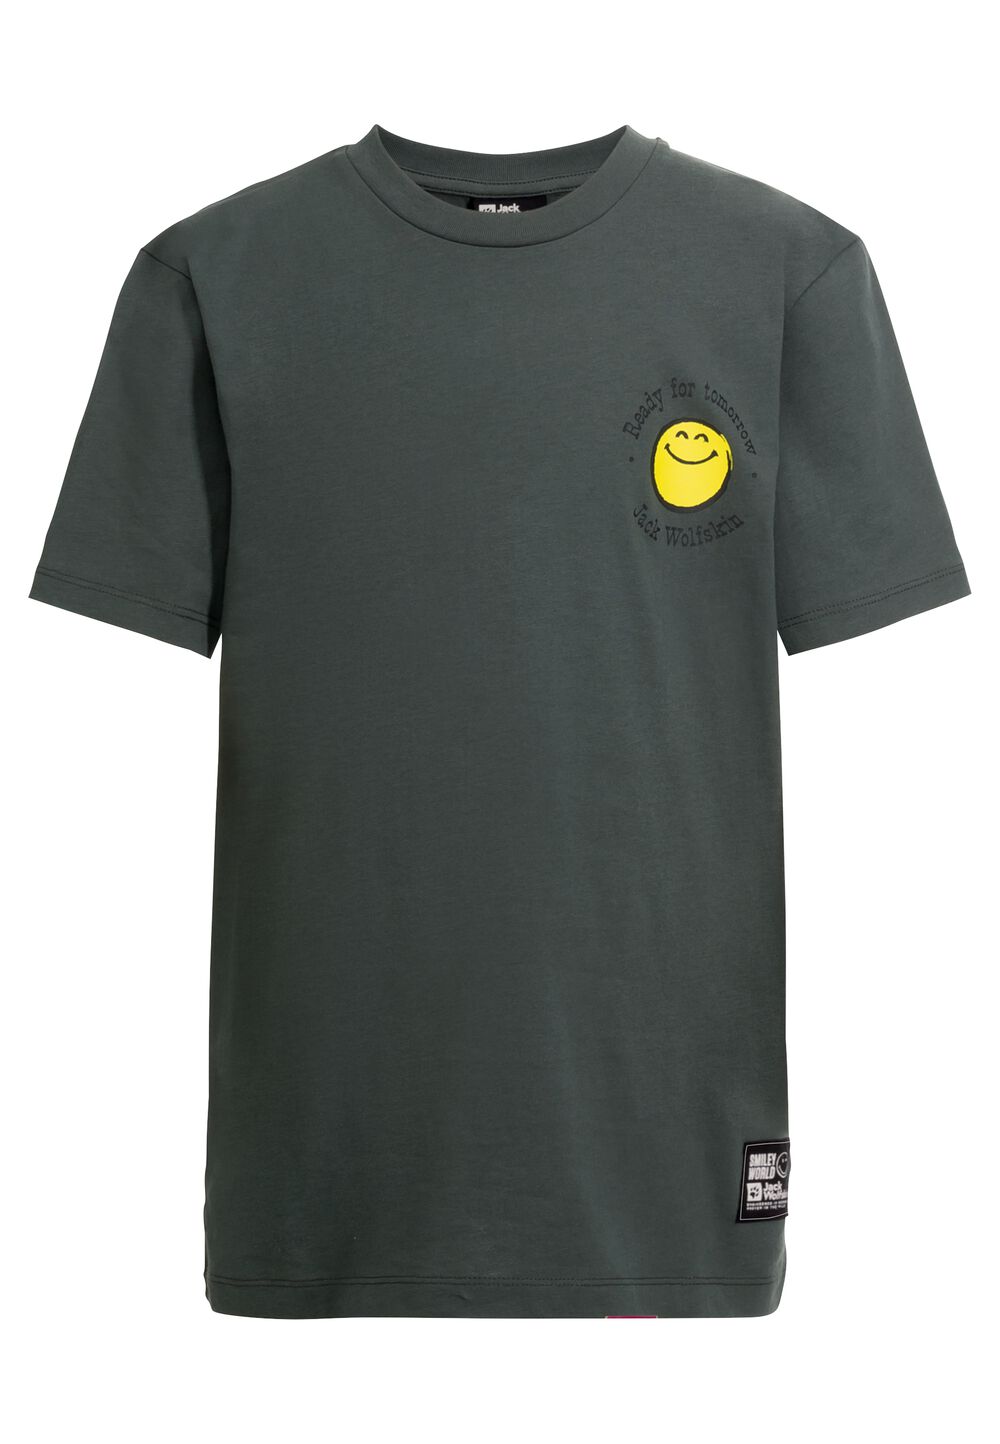 Jack Wolfskin Smileyworld T-Shirt Youth T-shirt van biologisch katoen tieners 152 grijs slate green